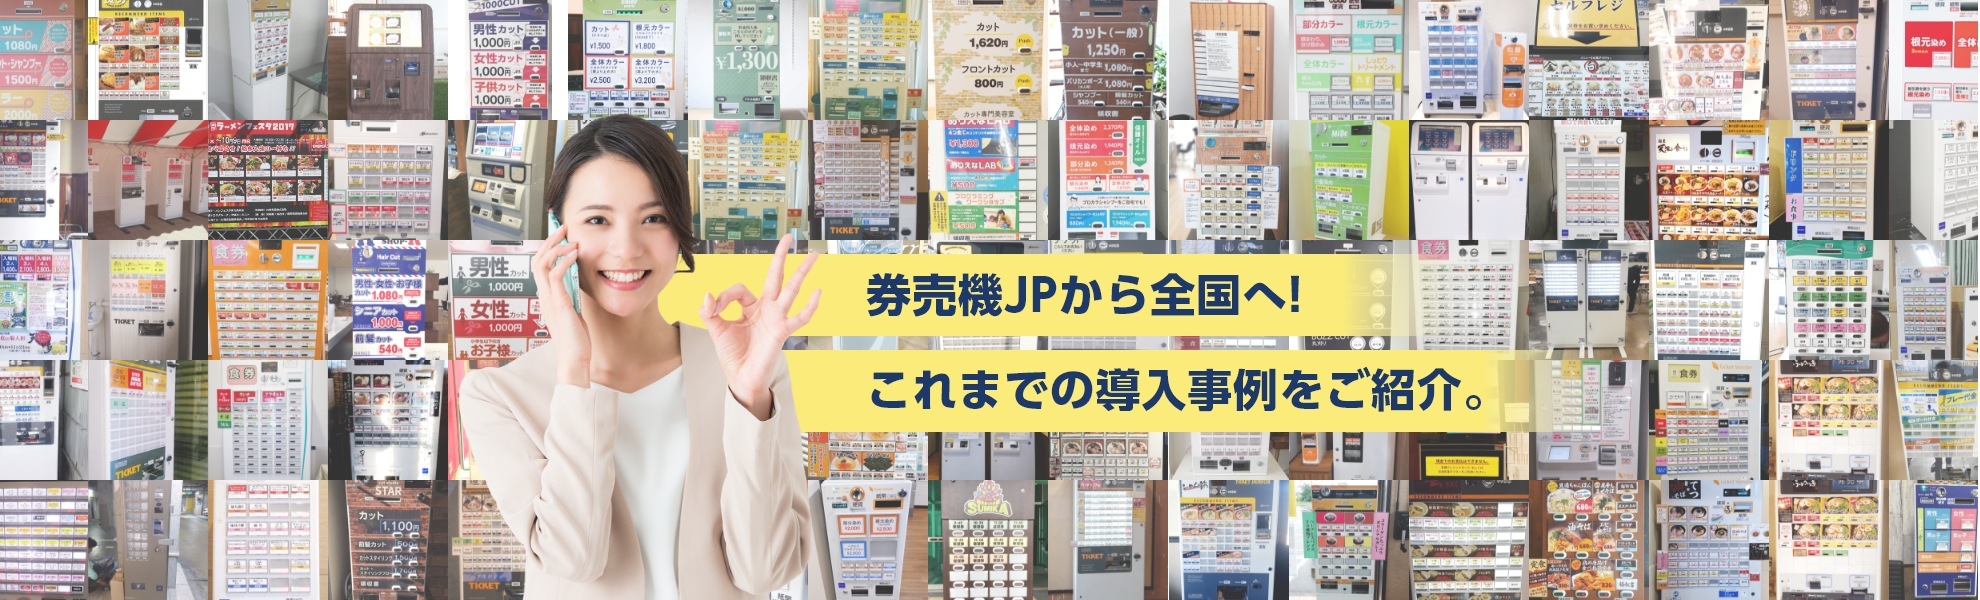 神奈川県の豚骨らーめん道様にレンタル券売機を導入させていただきましたの紹介ビジュアル